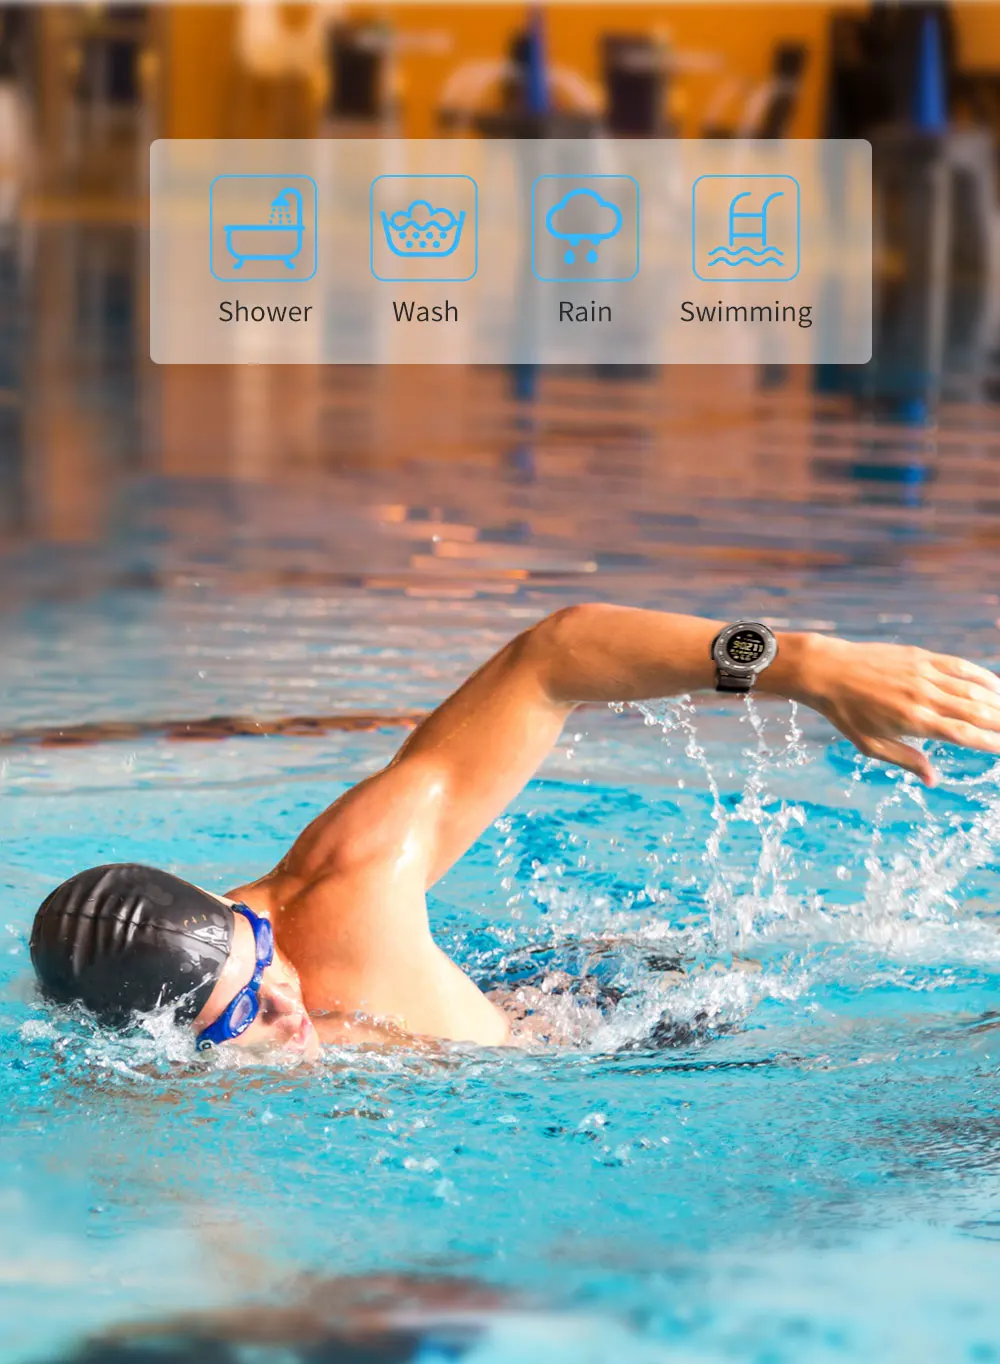 Bluetooth Smart Watch Sport шагомер Водонепроницаемый Напоминание Цифровой Мужчины SmartWatch Беспроводные устройства для IOS телефона Android